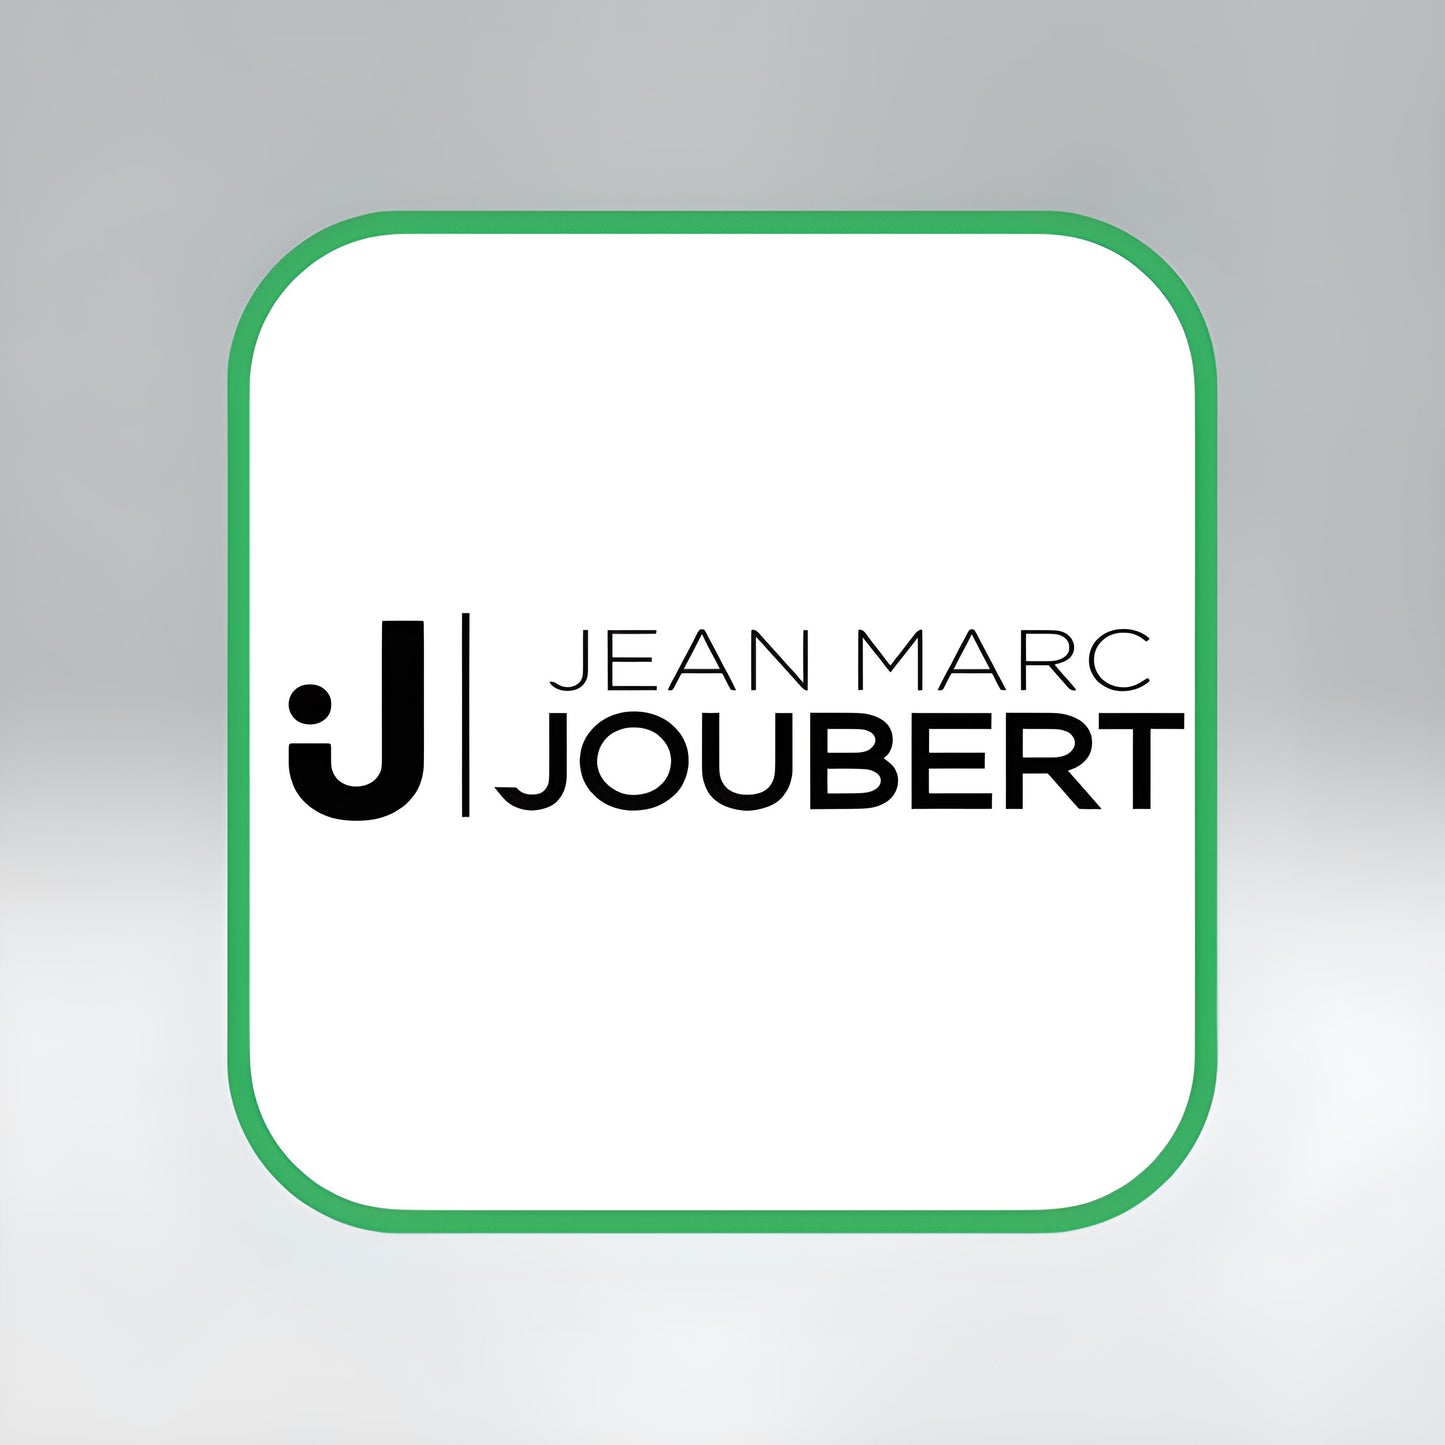 Jean Marc Joubert -  SECRETLINK